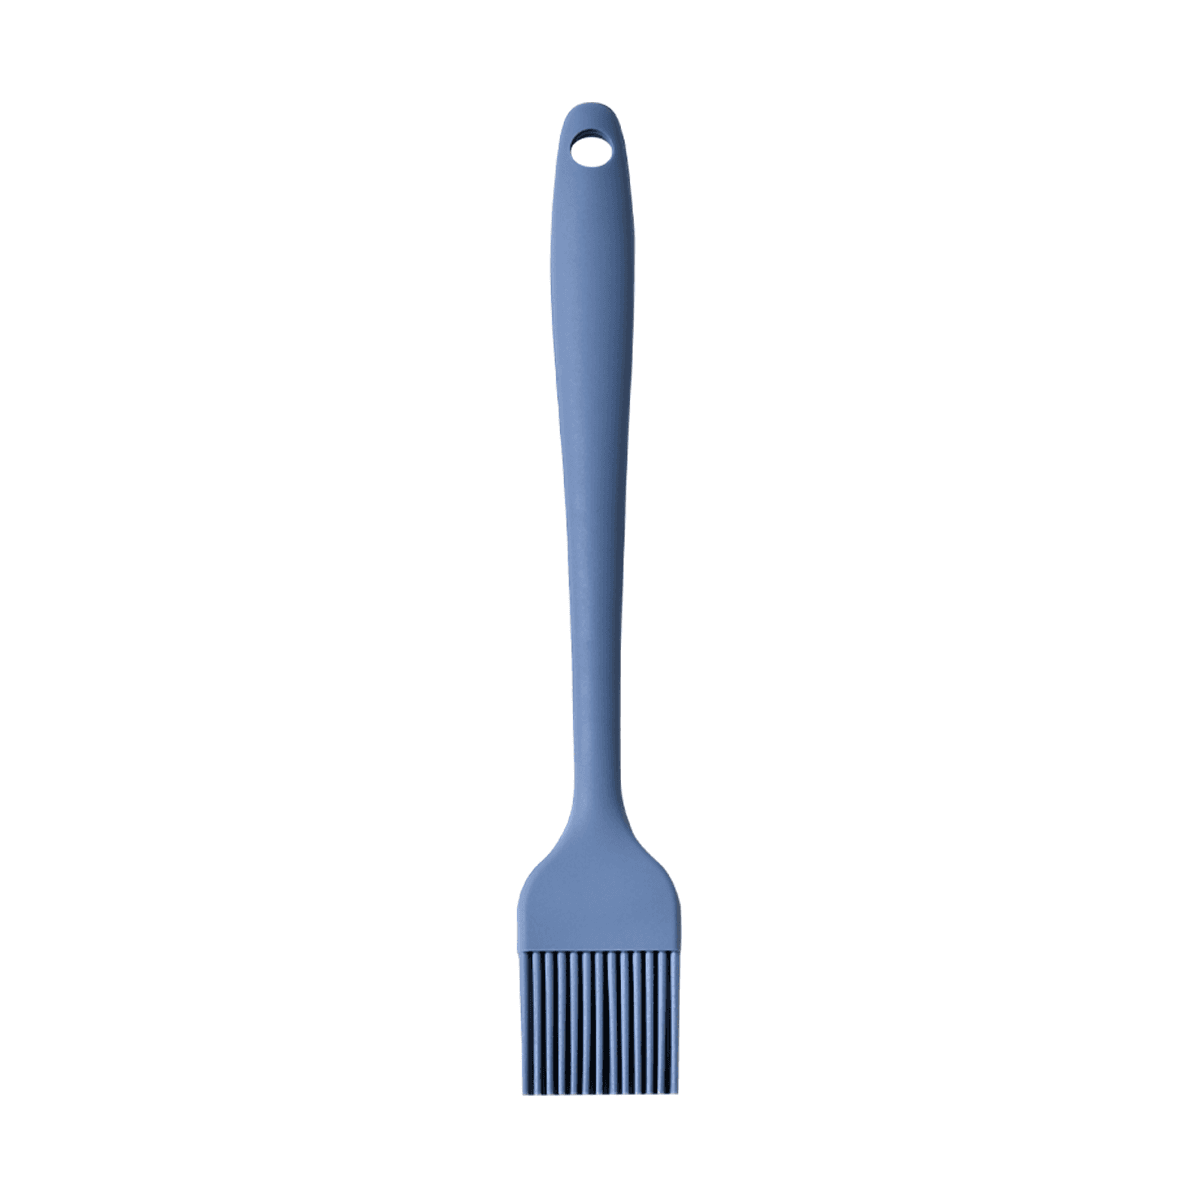 فرشاة الزيت سيليكون 21 سم أزرق ڤاج Vague Silicone Oil Brush 21 cm